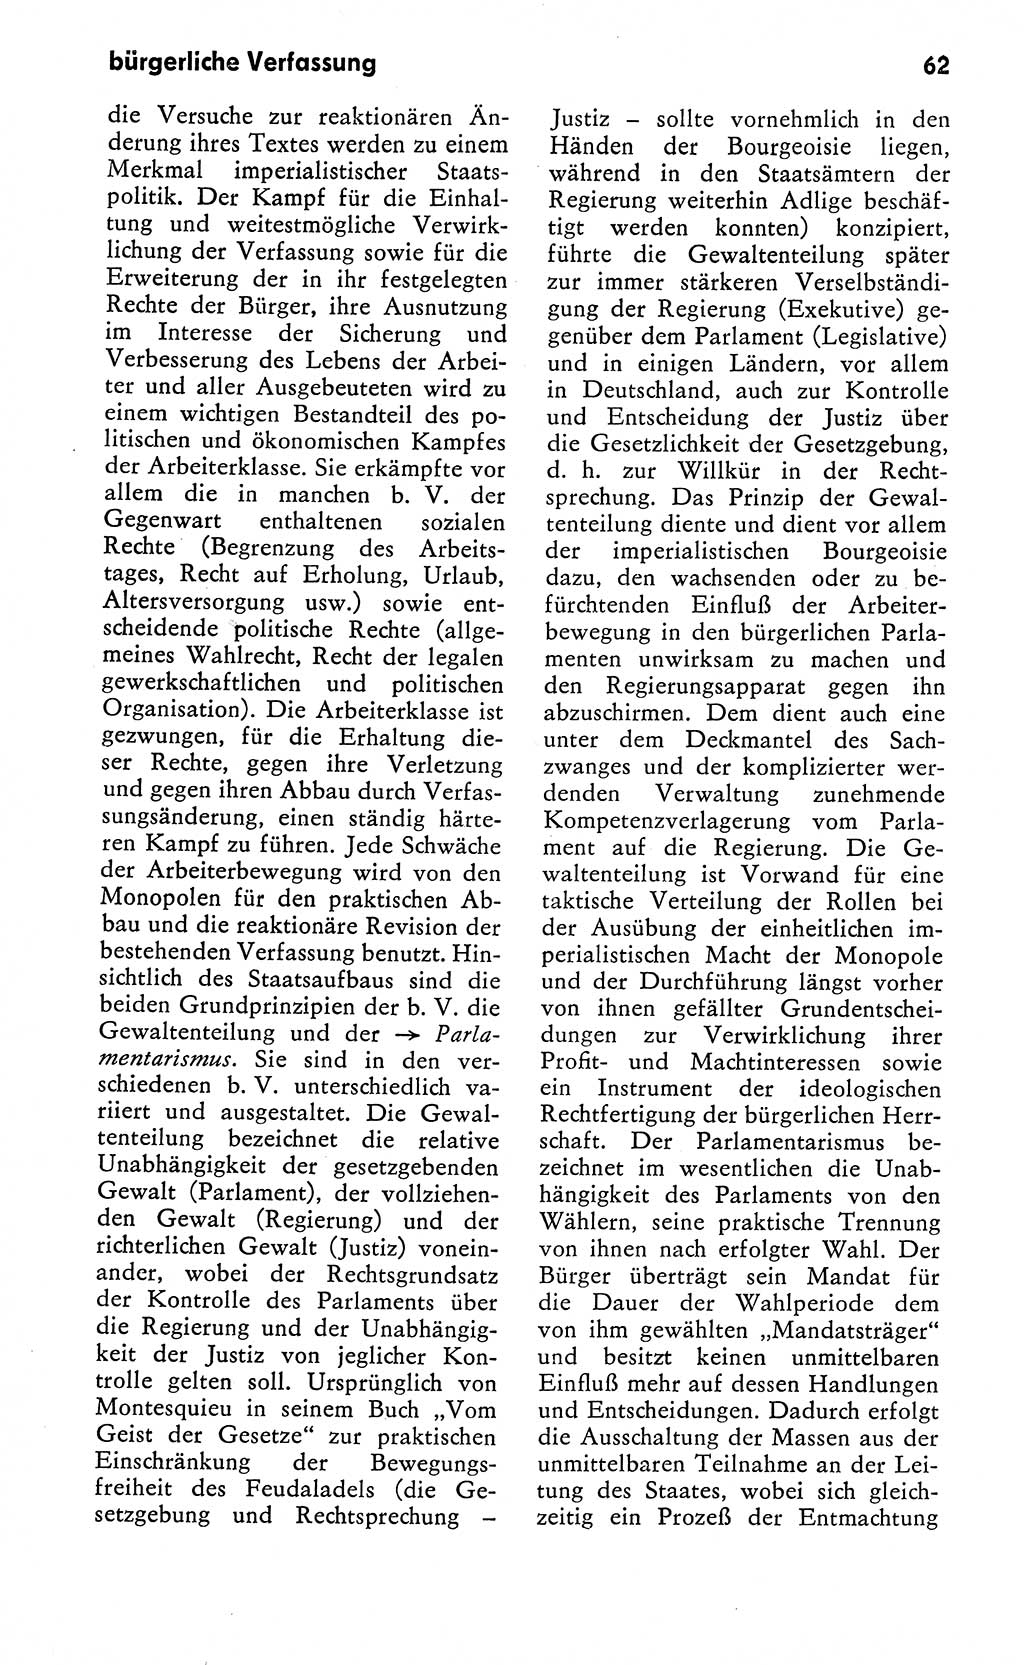 Wörterbuch zum sozialistischen Staat [Deutsche Demokratische Republik (DDR)] 1974, Seite 62 (Wb. soz. St. DDR 1974, S. 62)